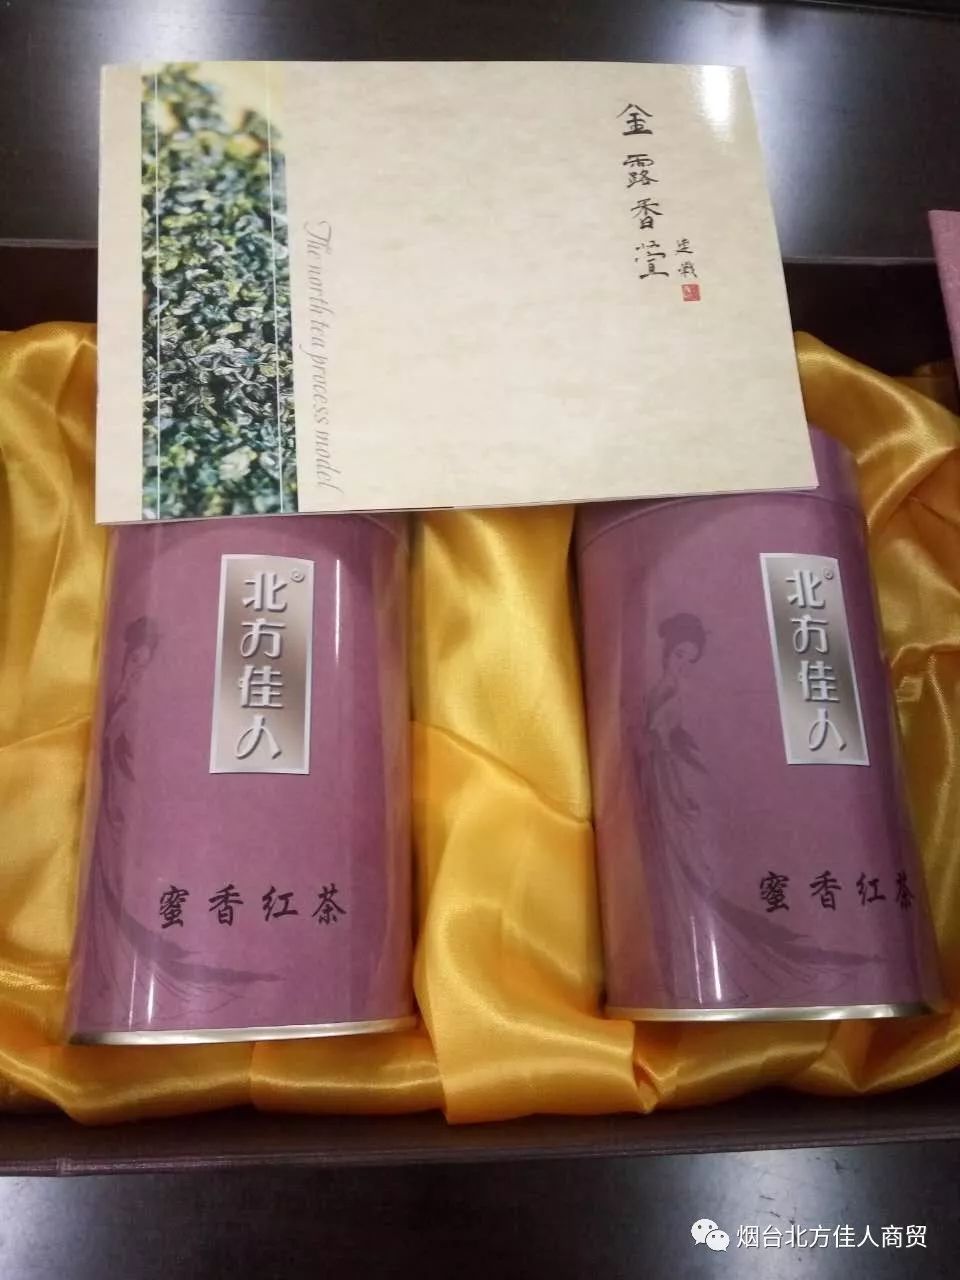 金露香萱&北方佳人,佳节礼盒烟台北方佳人商贸,是一家批发,零售茶叶的